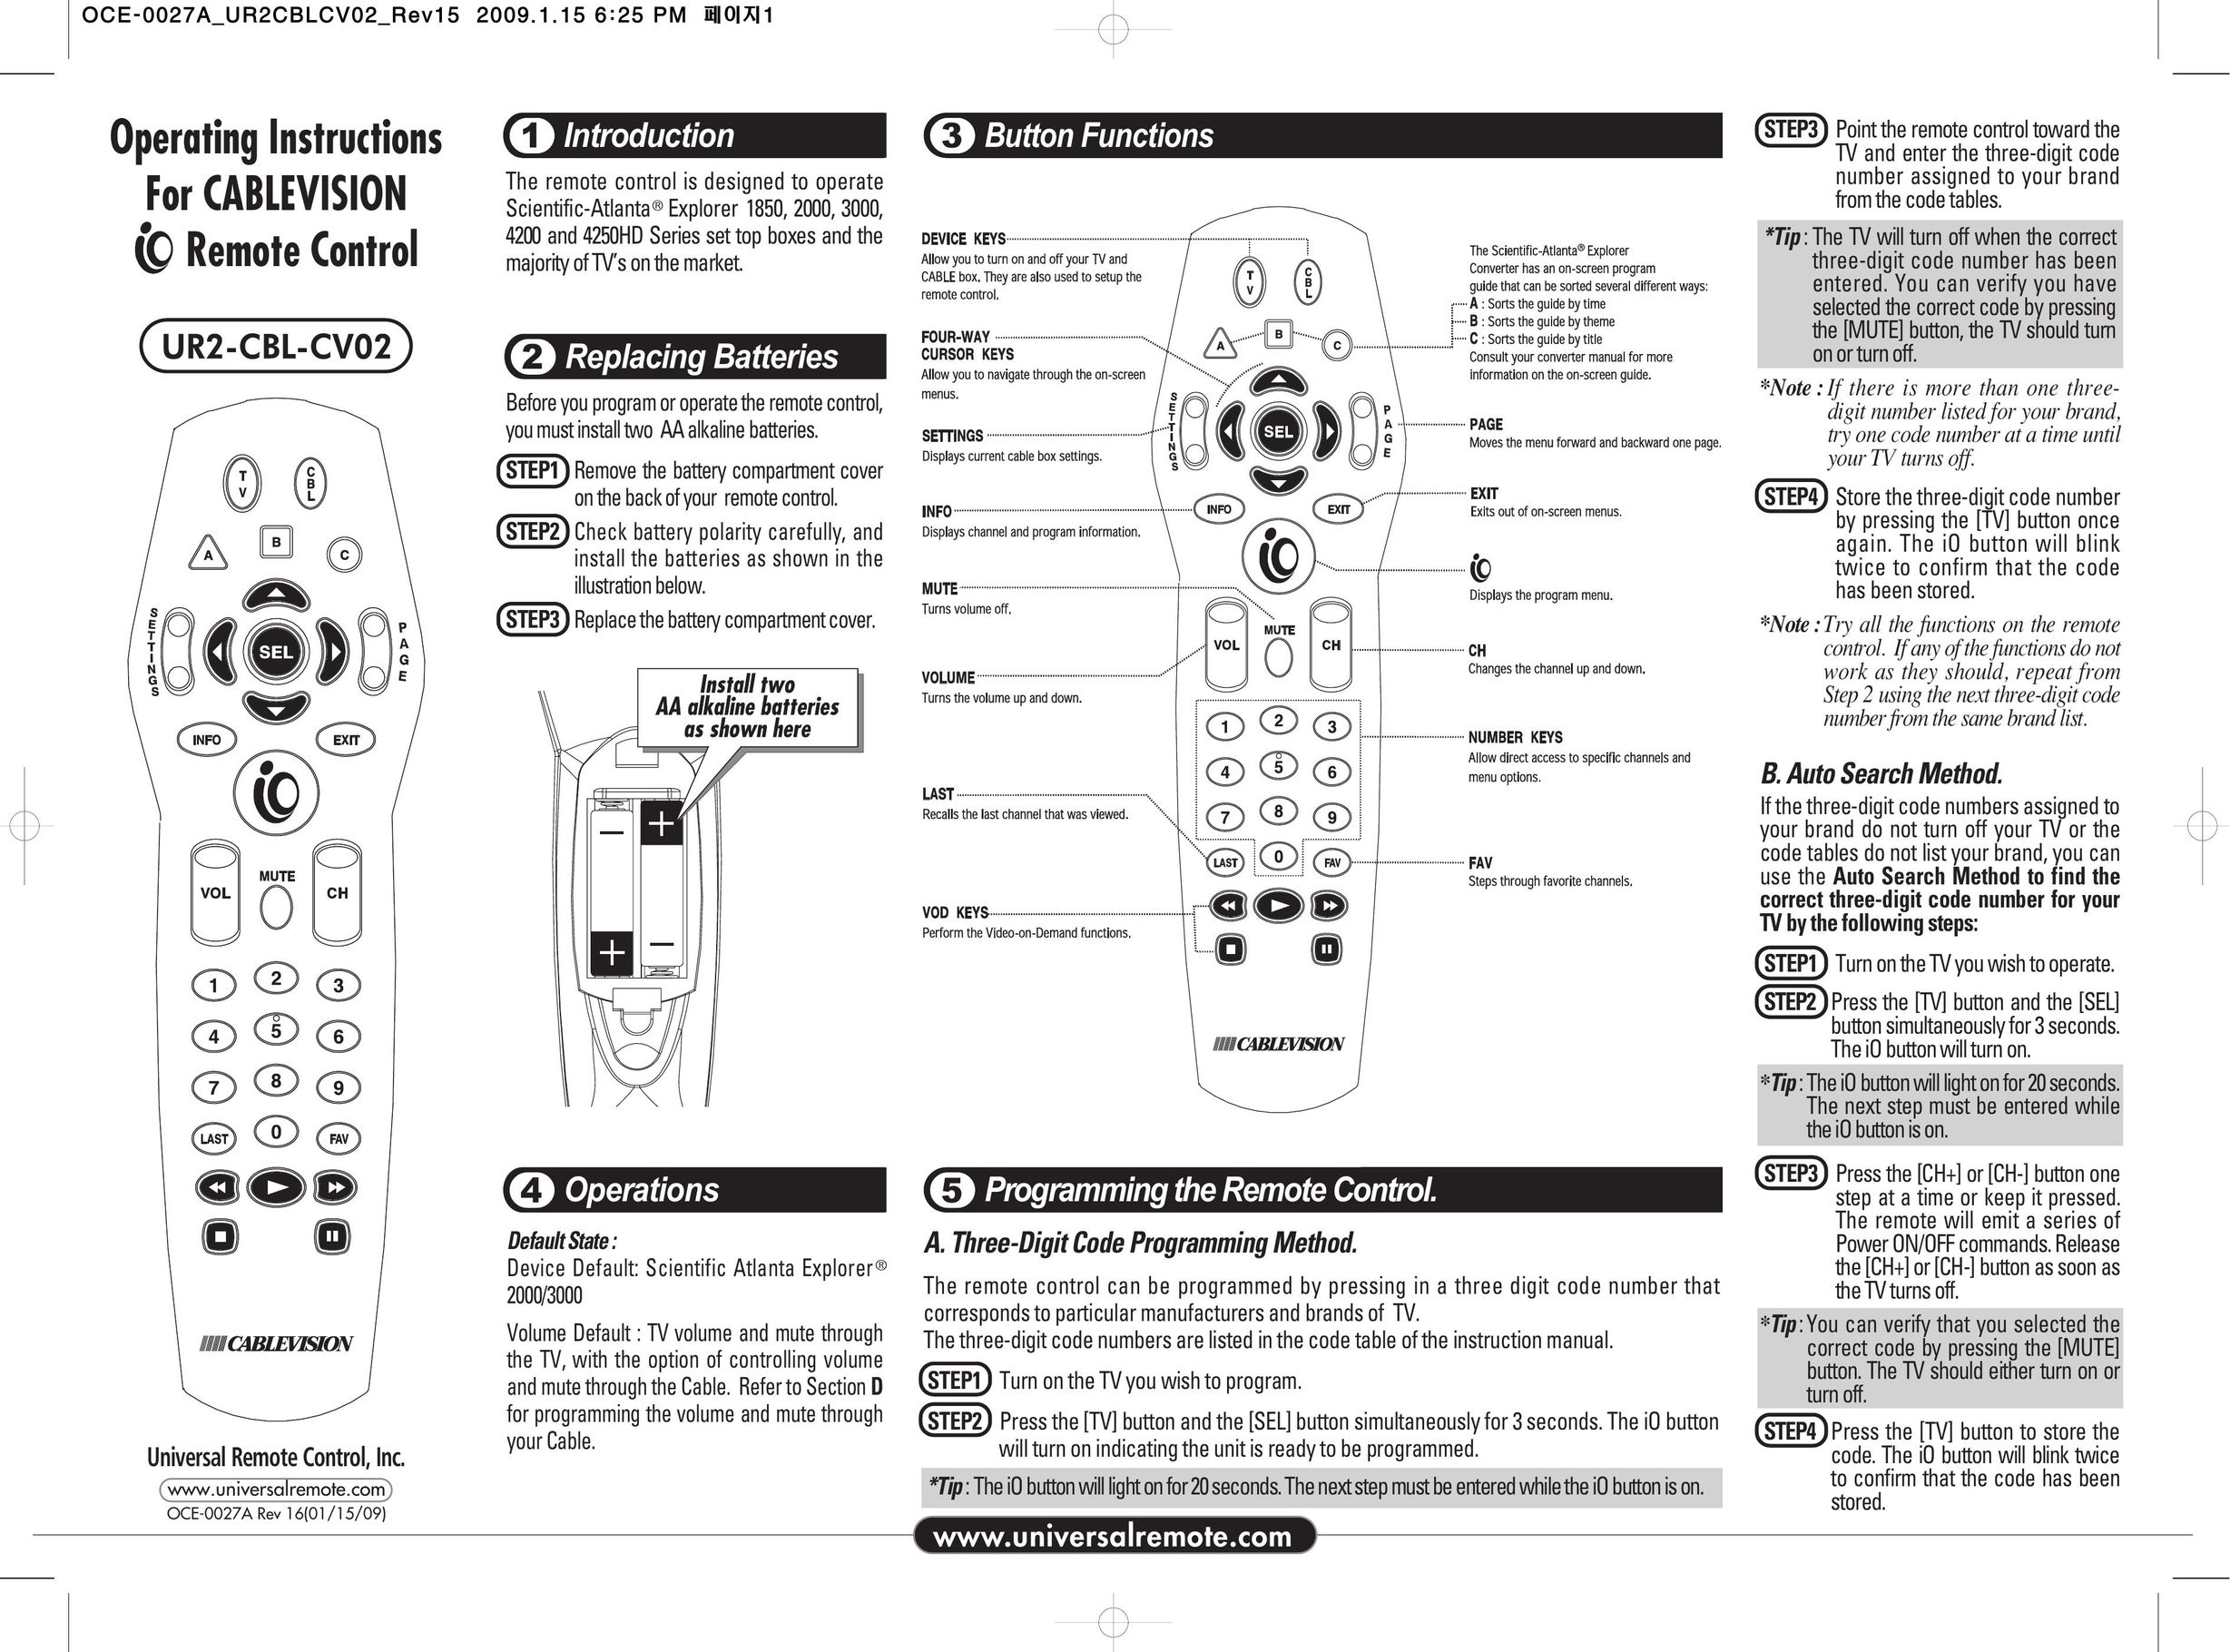 Universal Remote Control OCE-0027A Universal Remote User Manual